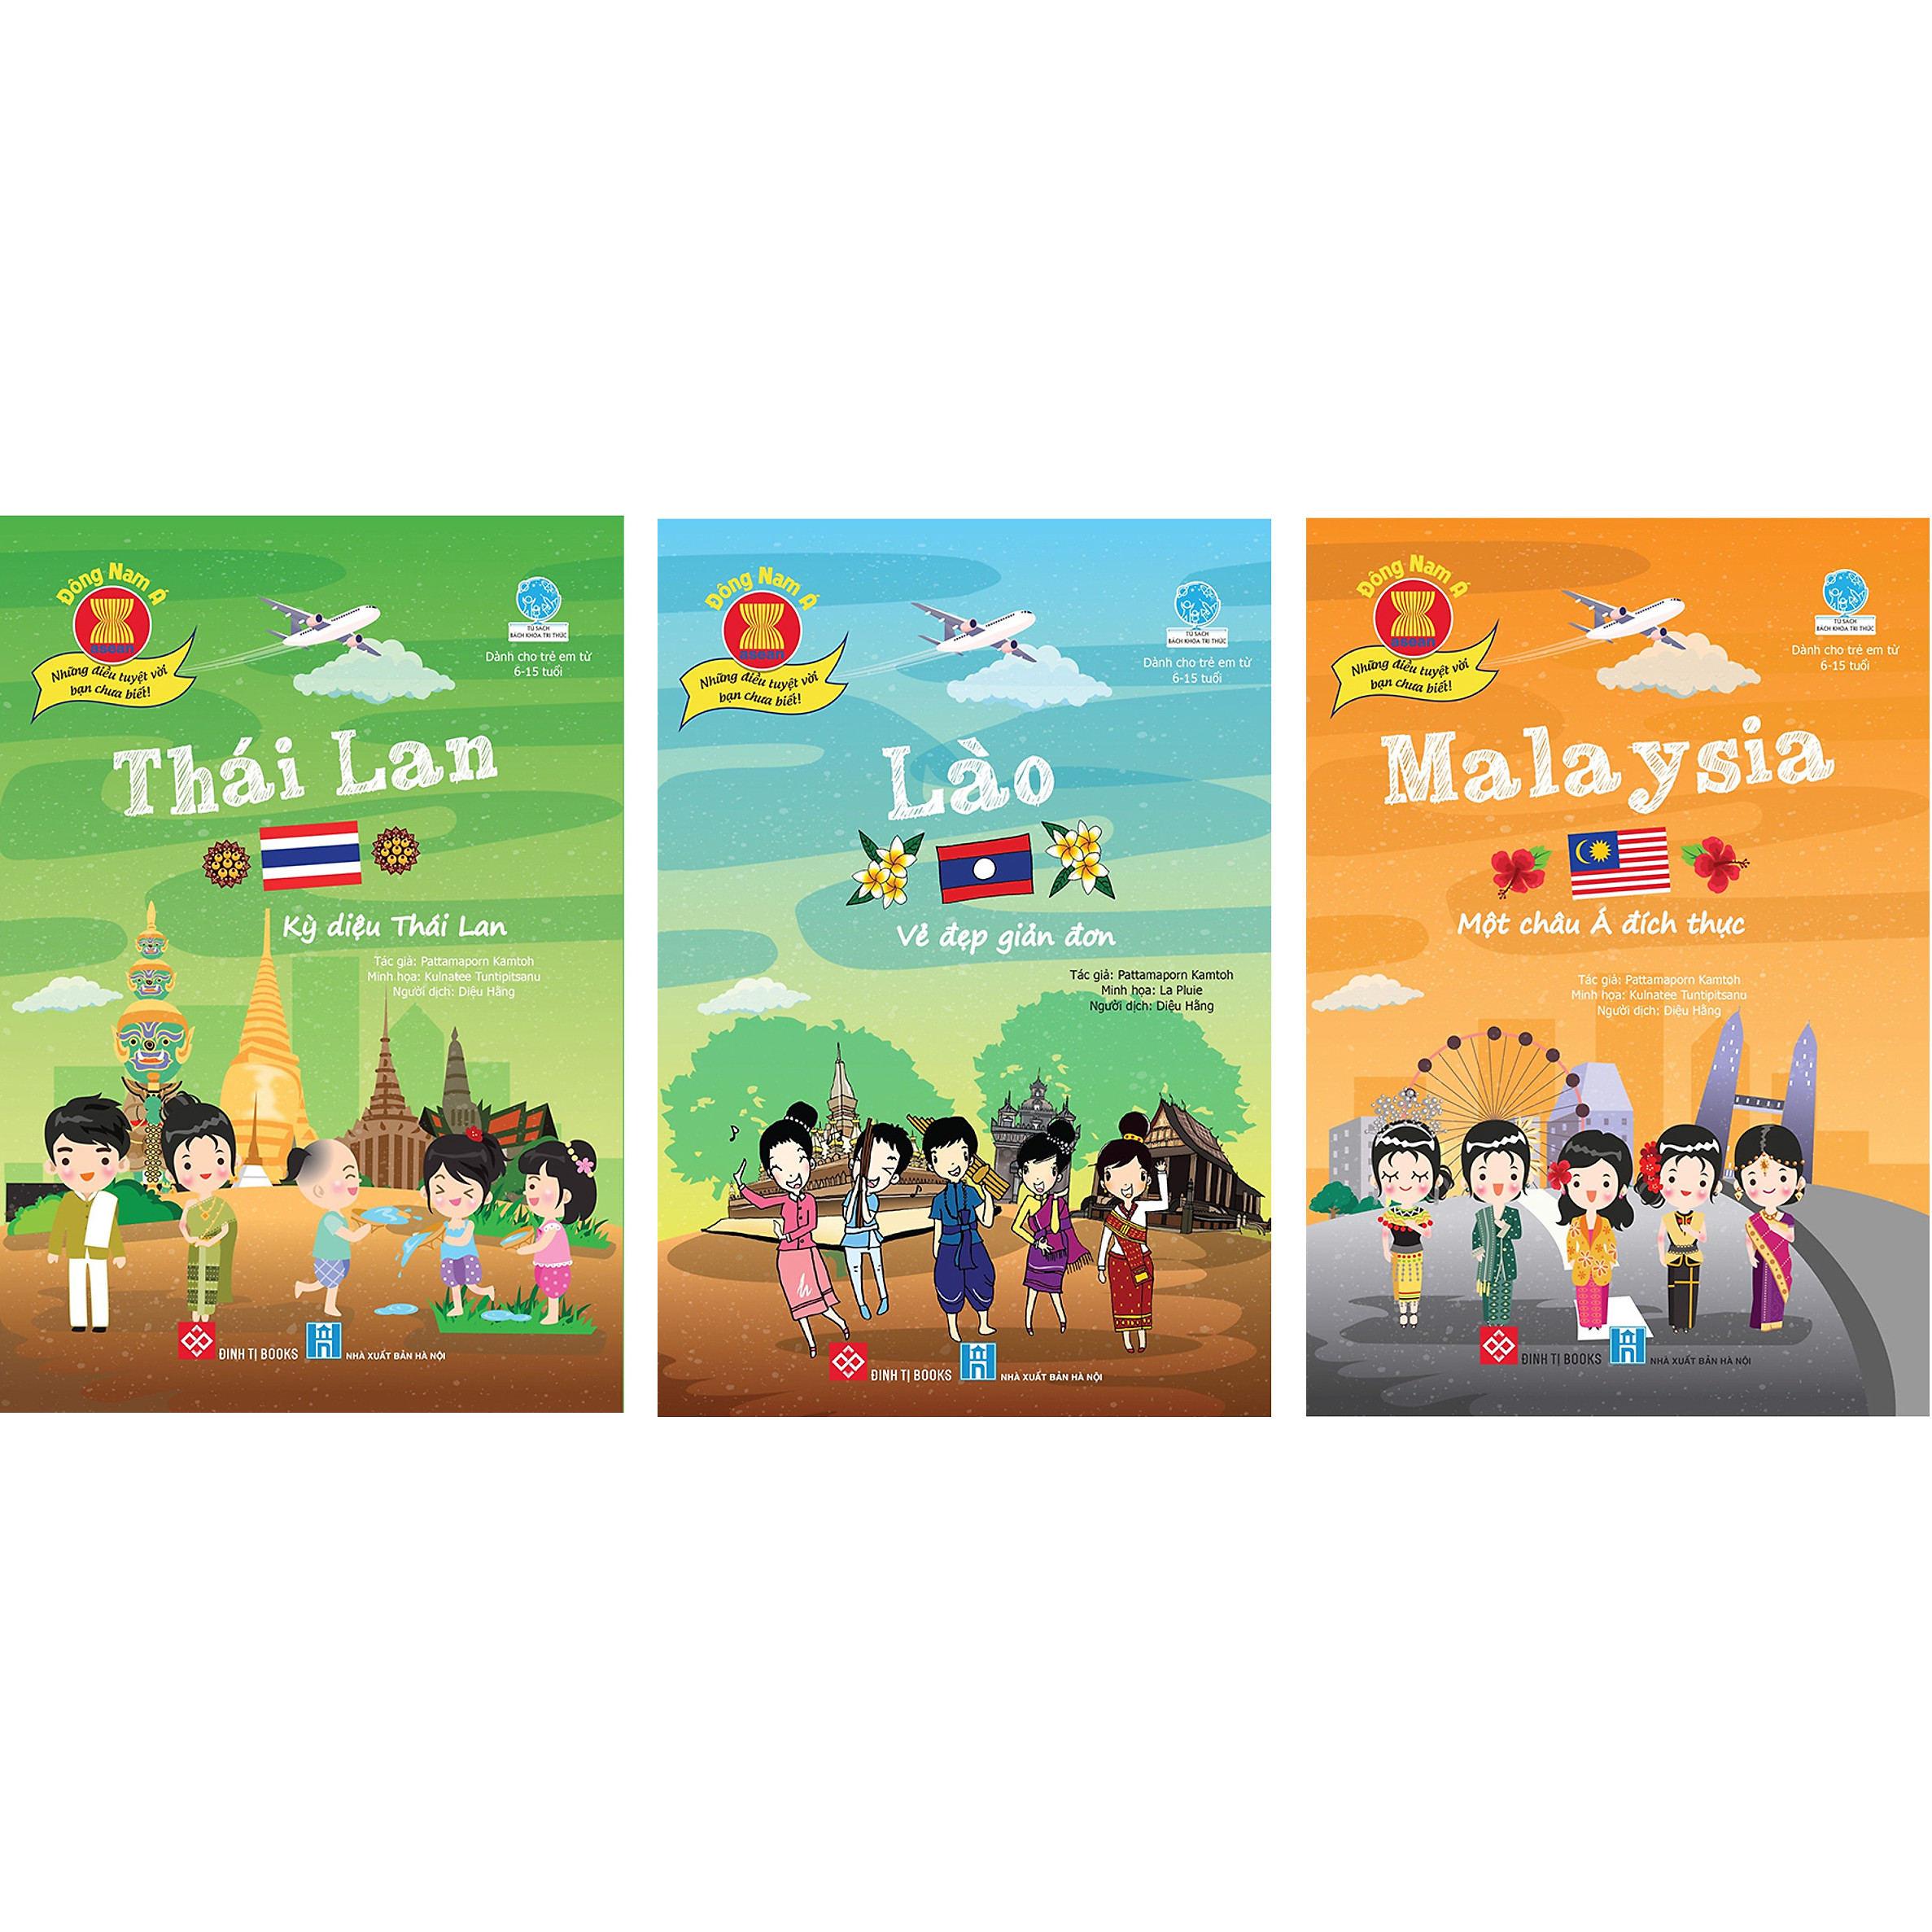 Combo 3 Cuốn Đông Nam Á - Những Điều Tuyệt Vời Bạn Chưa Biết!: Malaysia - Một Châu Á Đích Thực + Lào - Vẻ đẹp giản đơn + Thái Lan - Kỳ diệu Thái Lan